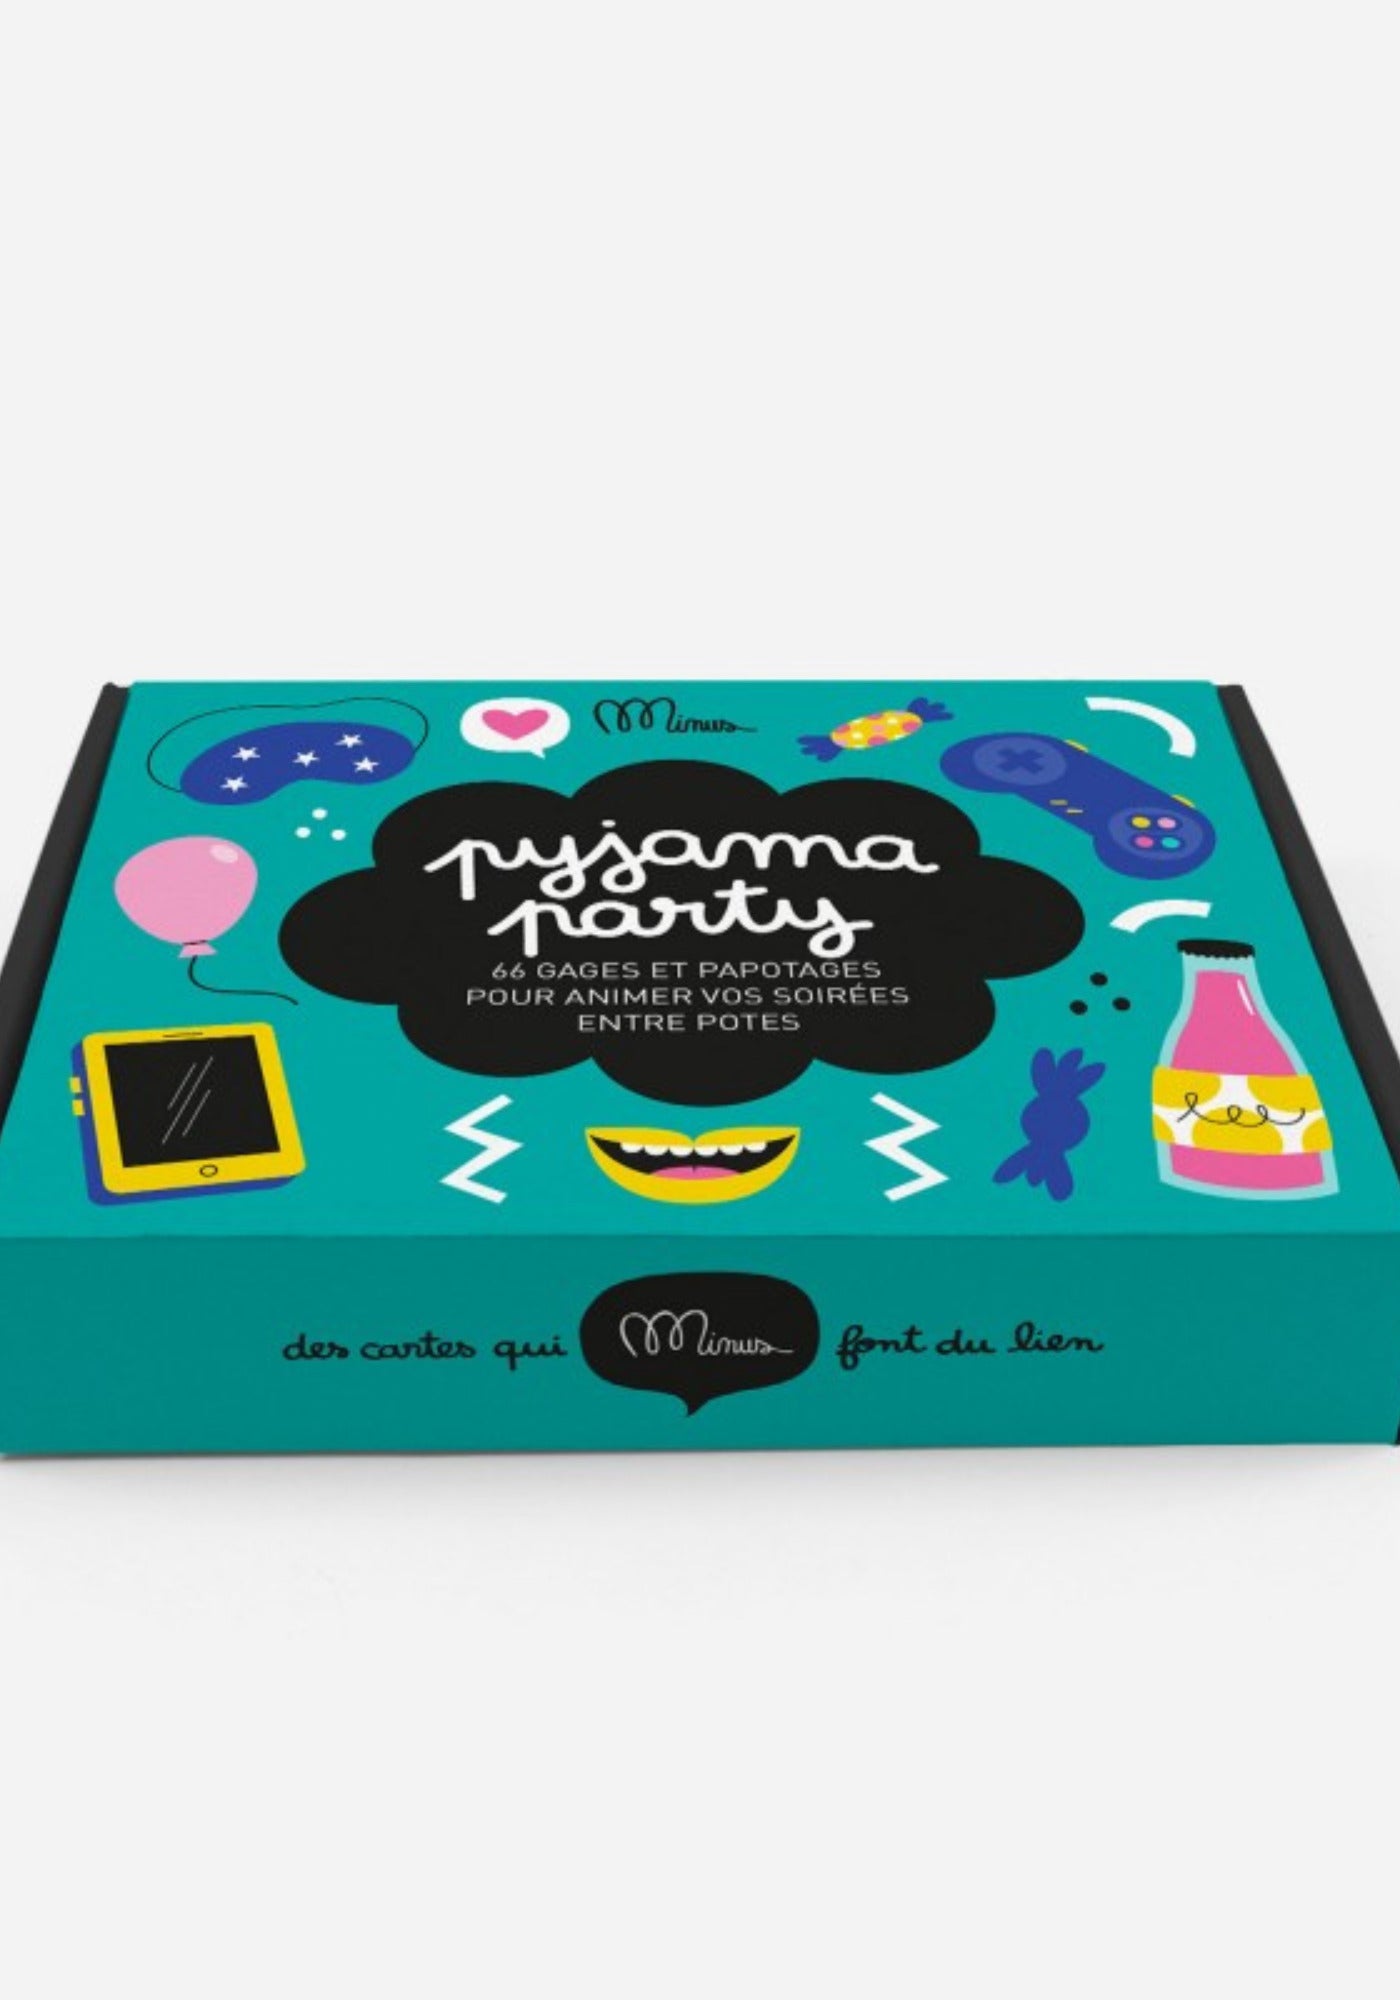 Le kit de discussion Pyjama Party de chez Minus Editions